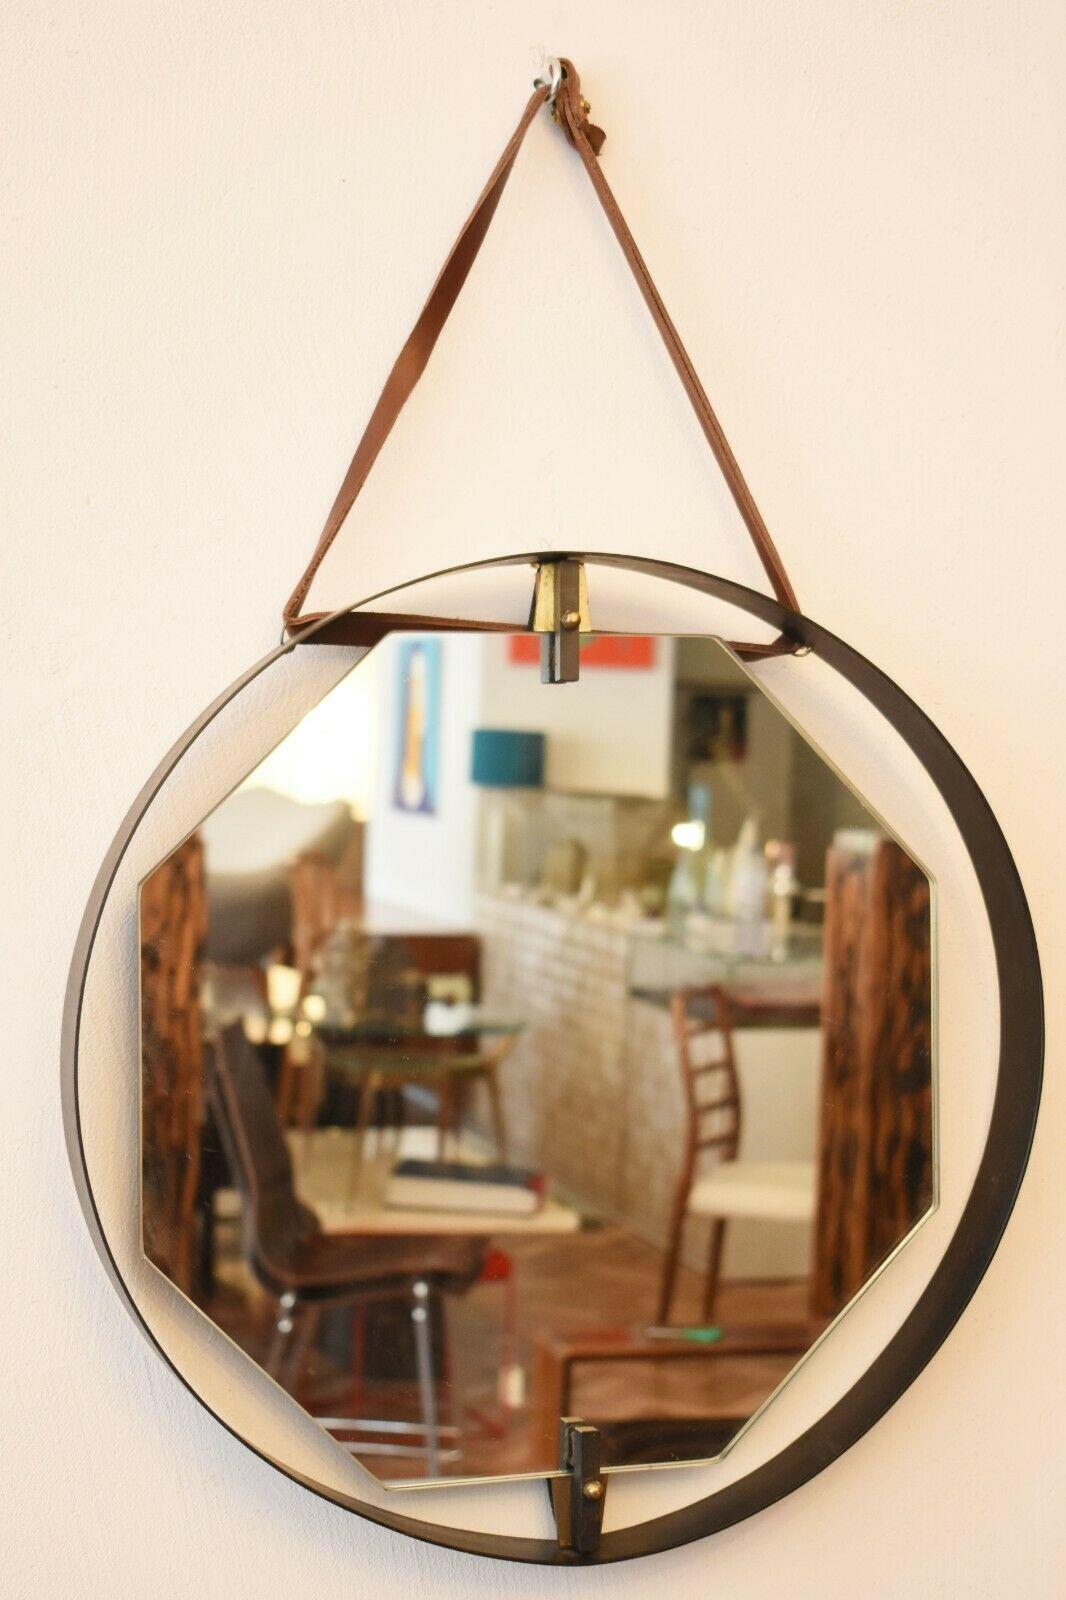 Seltener und ungewöhnlicher italienischer sechseckiger Spiegel mit rundem Messingrahmen, aufgehängt an einem Lederband.